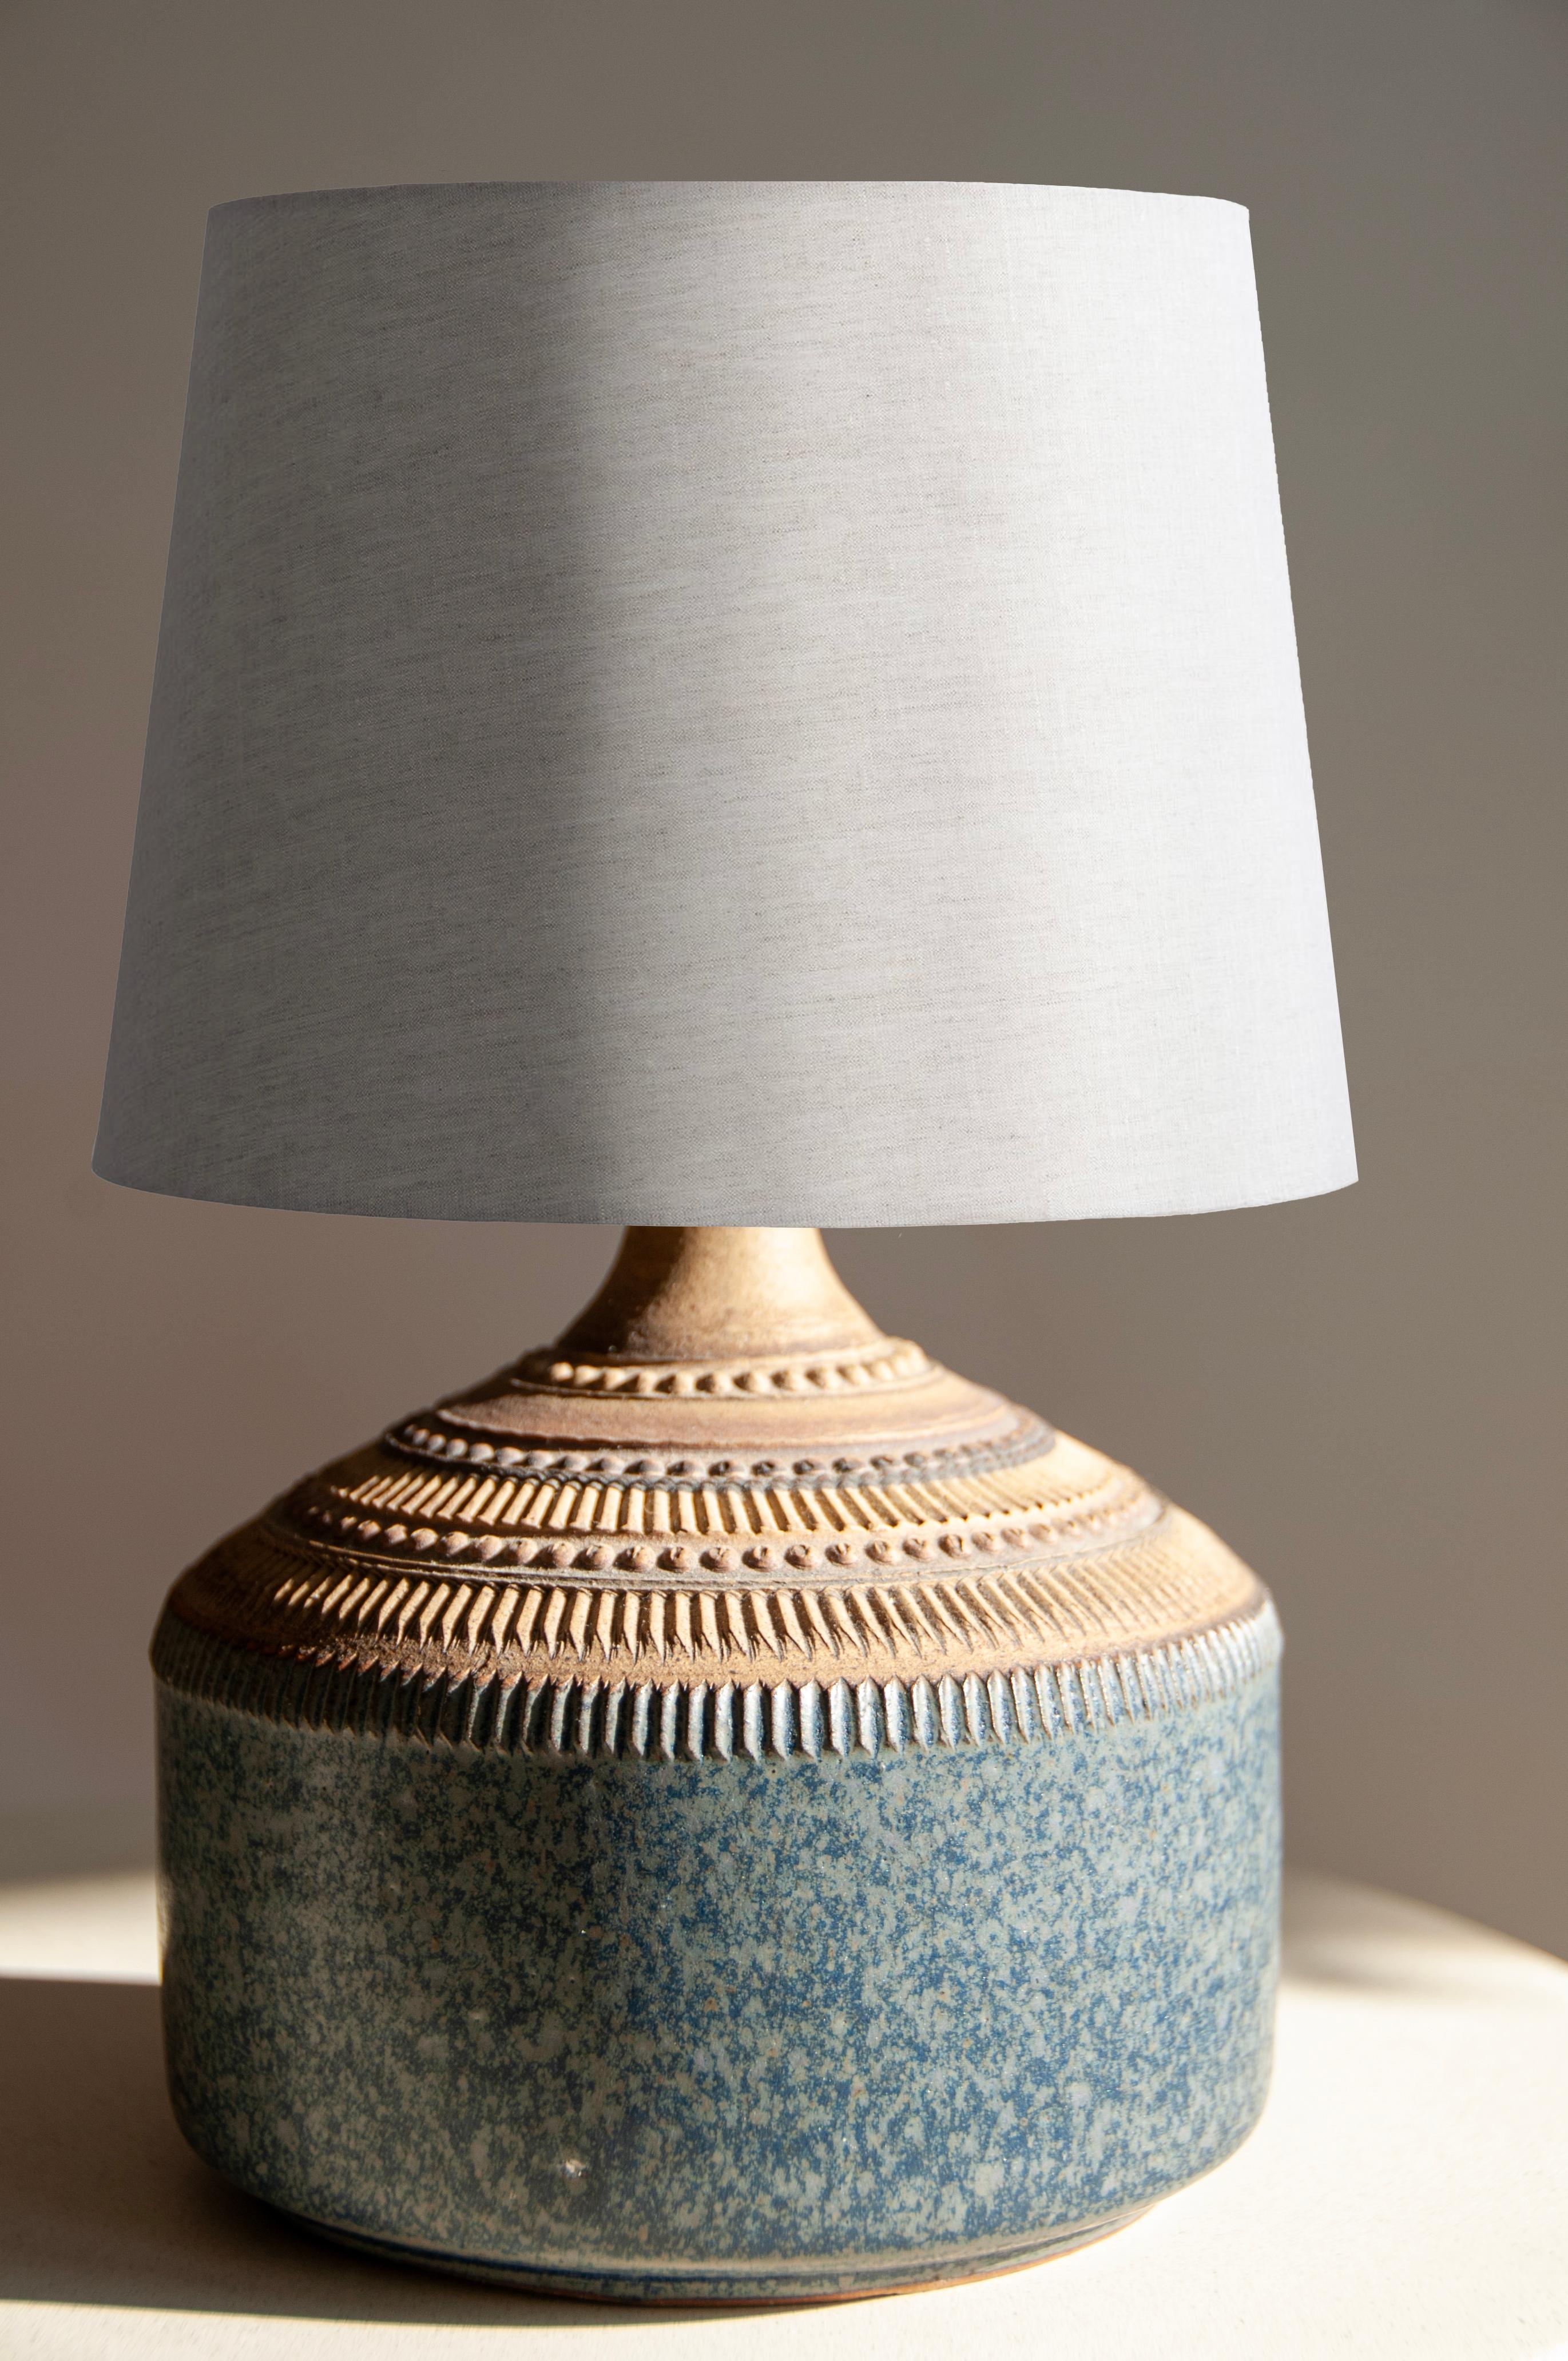 Entdecken Sie ein außergewöhnliches Stück Vintage-Beleuchtung mit dieser handgefertigten Keramiklampe des kultigen Herstellers Klase Keramik Höganäs, die in den 1960er Jahren mit viel Liebe und Handwerkskunst hergestellt wurde!

Beschreibung des